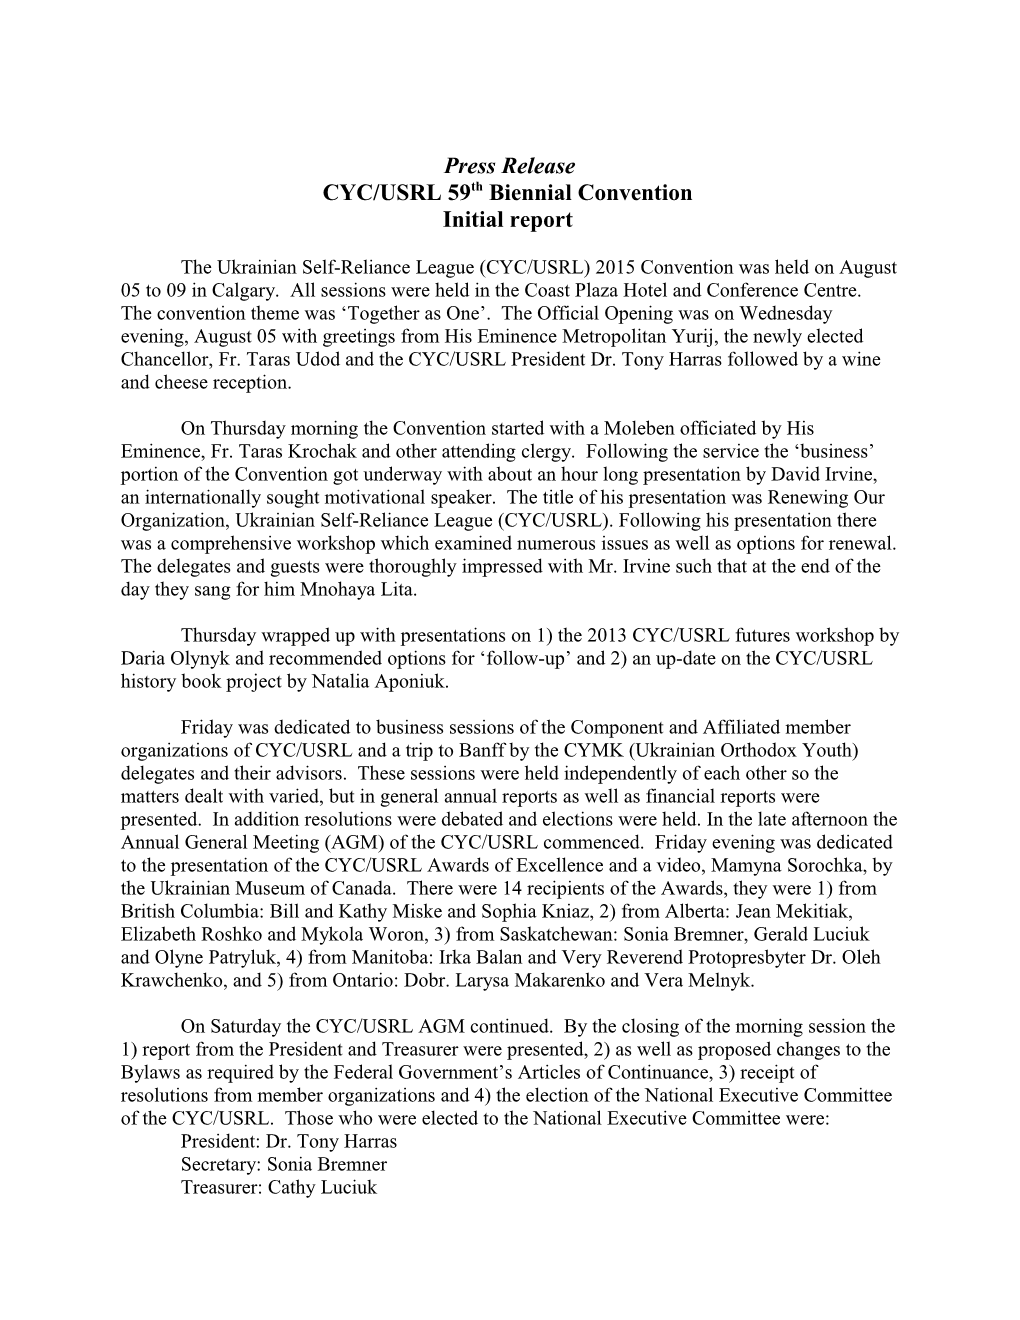 CYC/USRL 59Th Biennial Convention